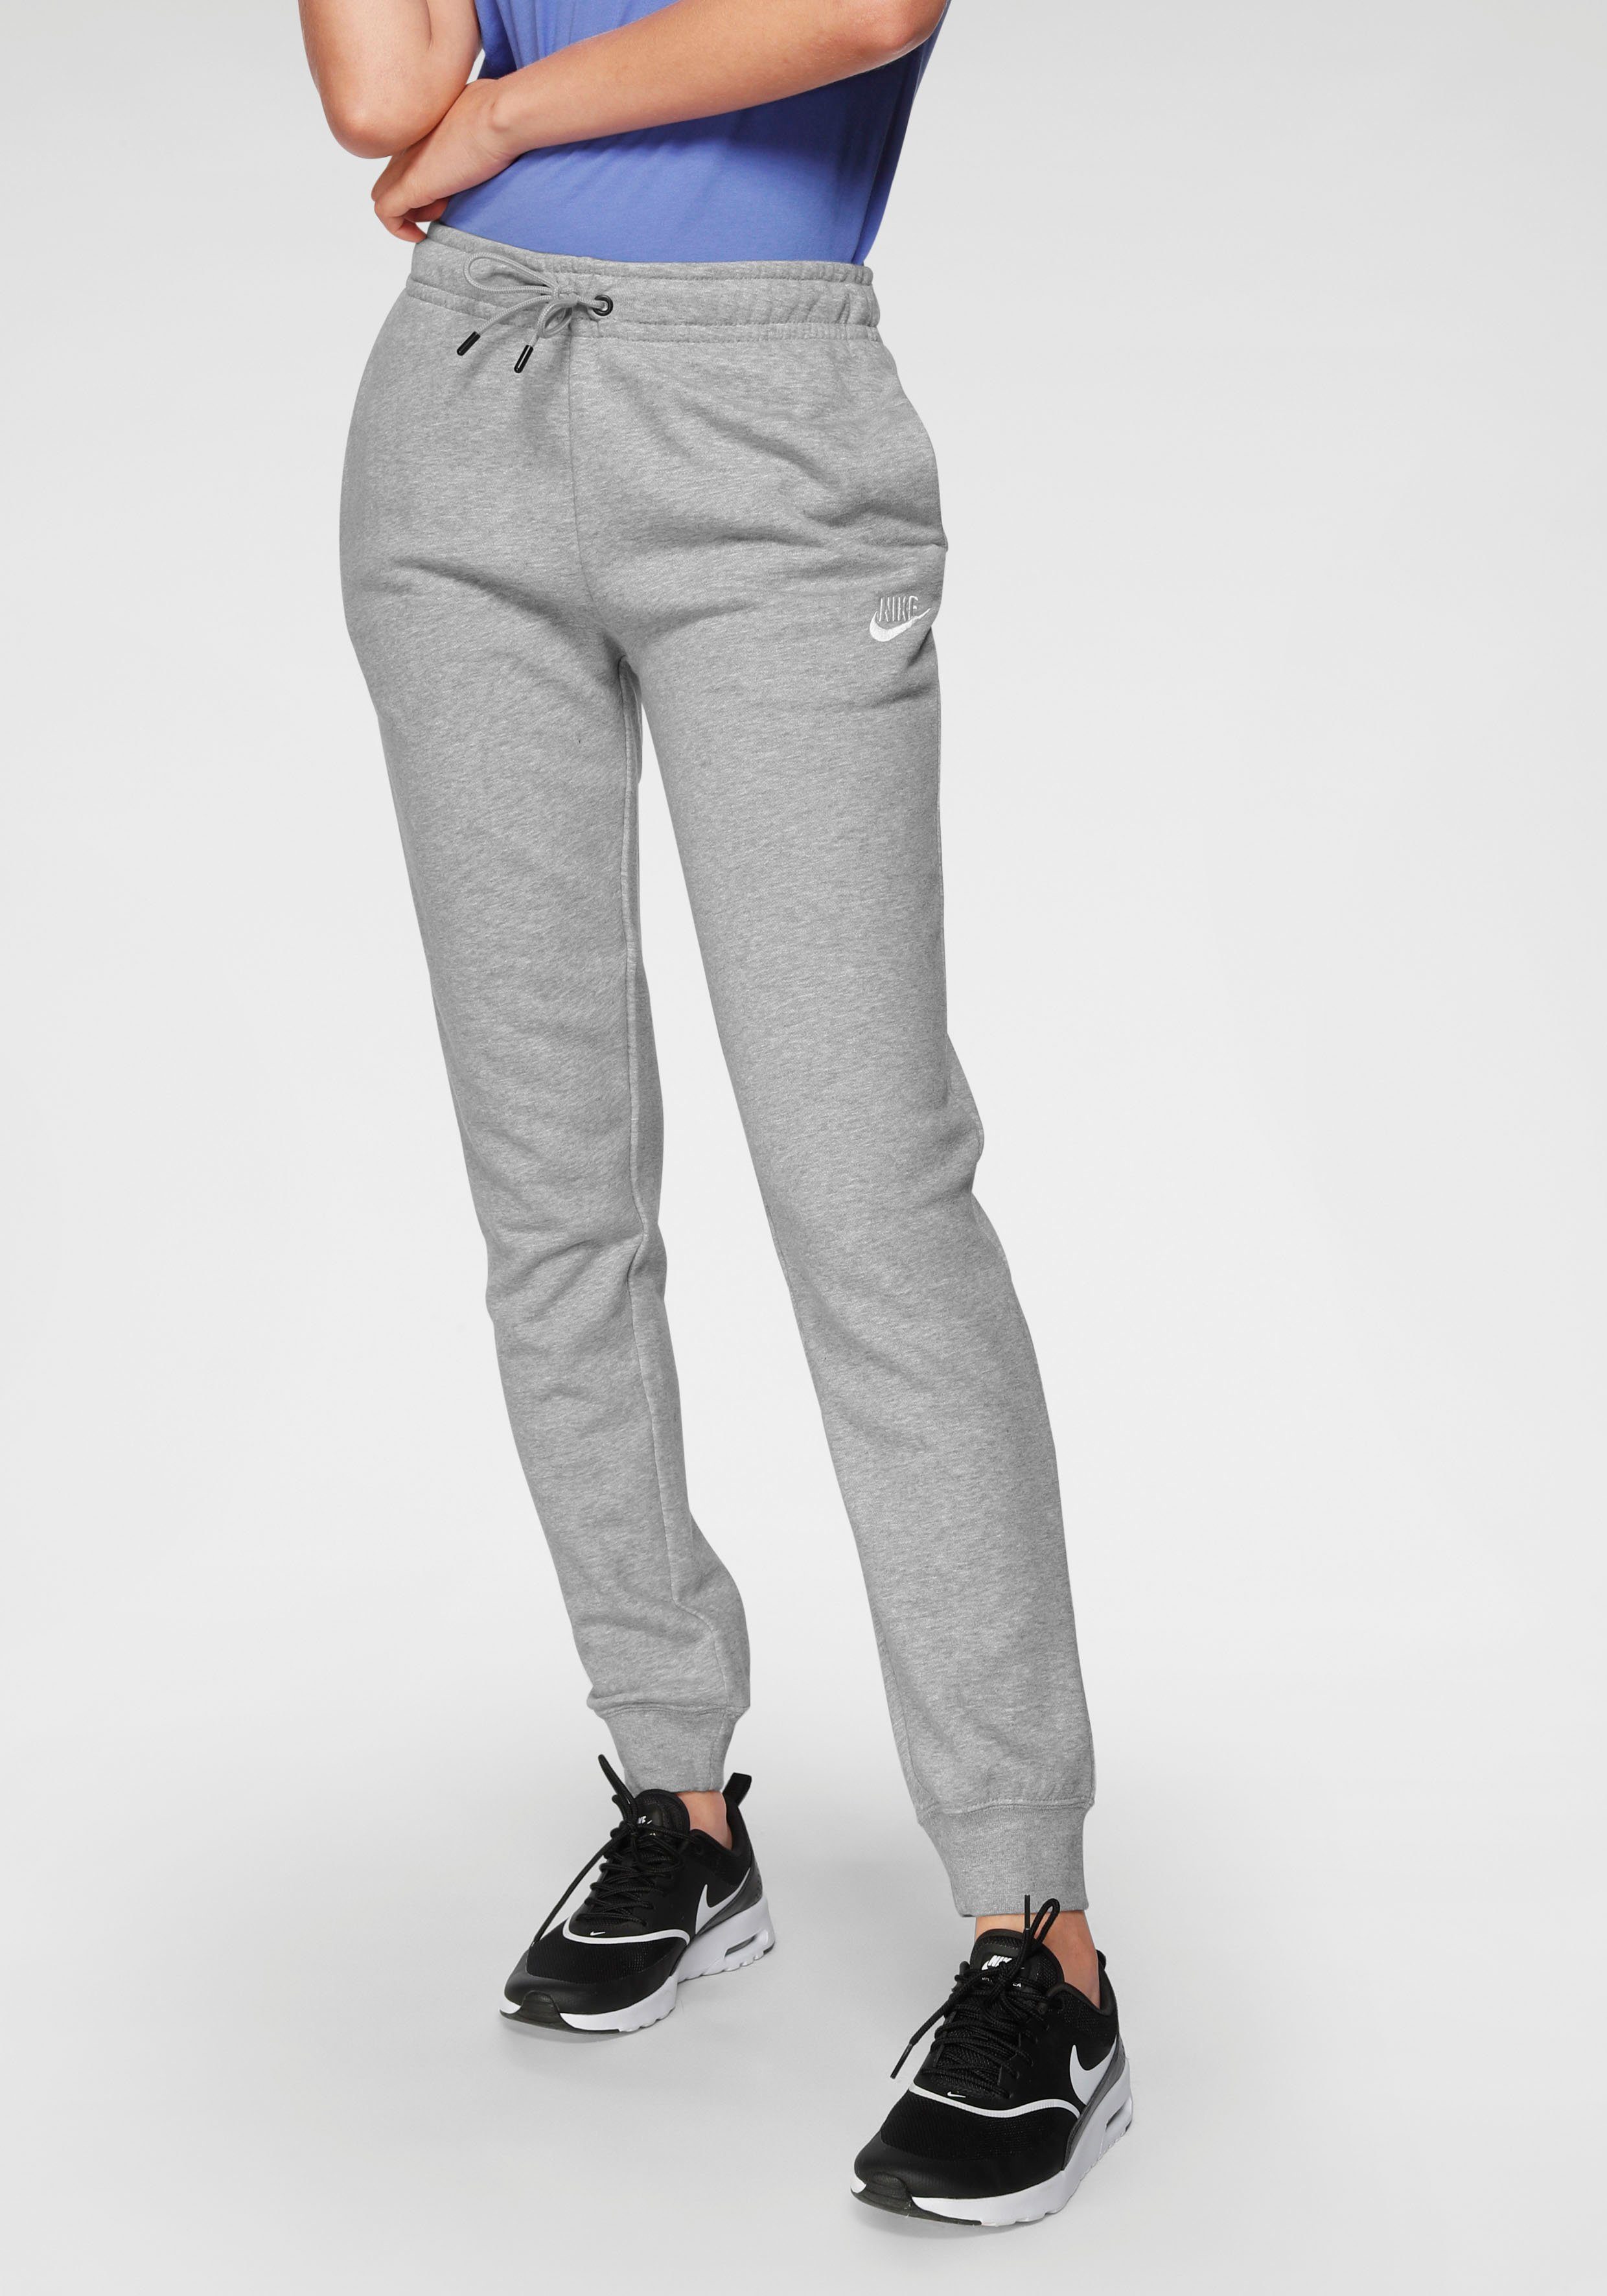 FLEECE Jogginghose WOMENS Sportswear Nike ESSENTIAL grau-meliert PANTS